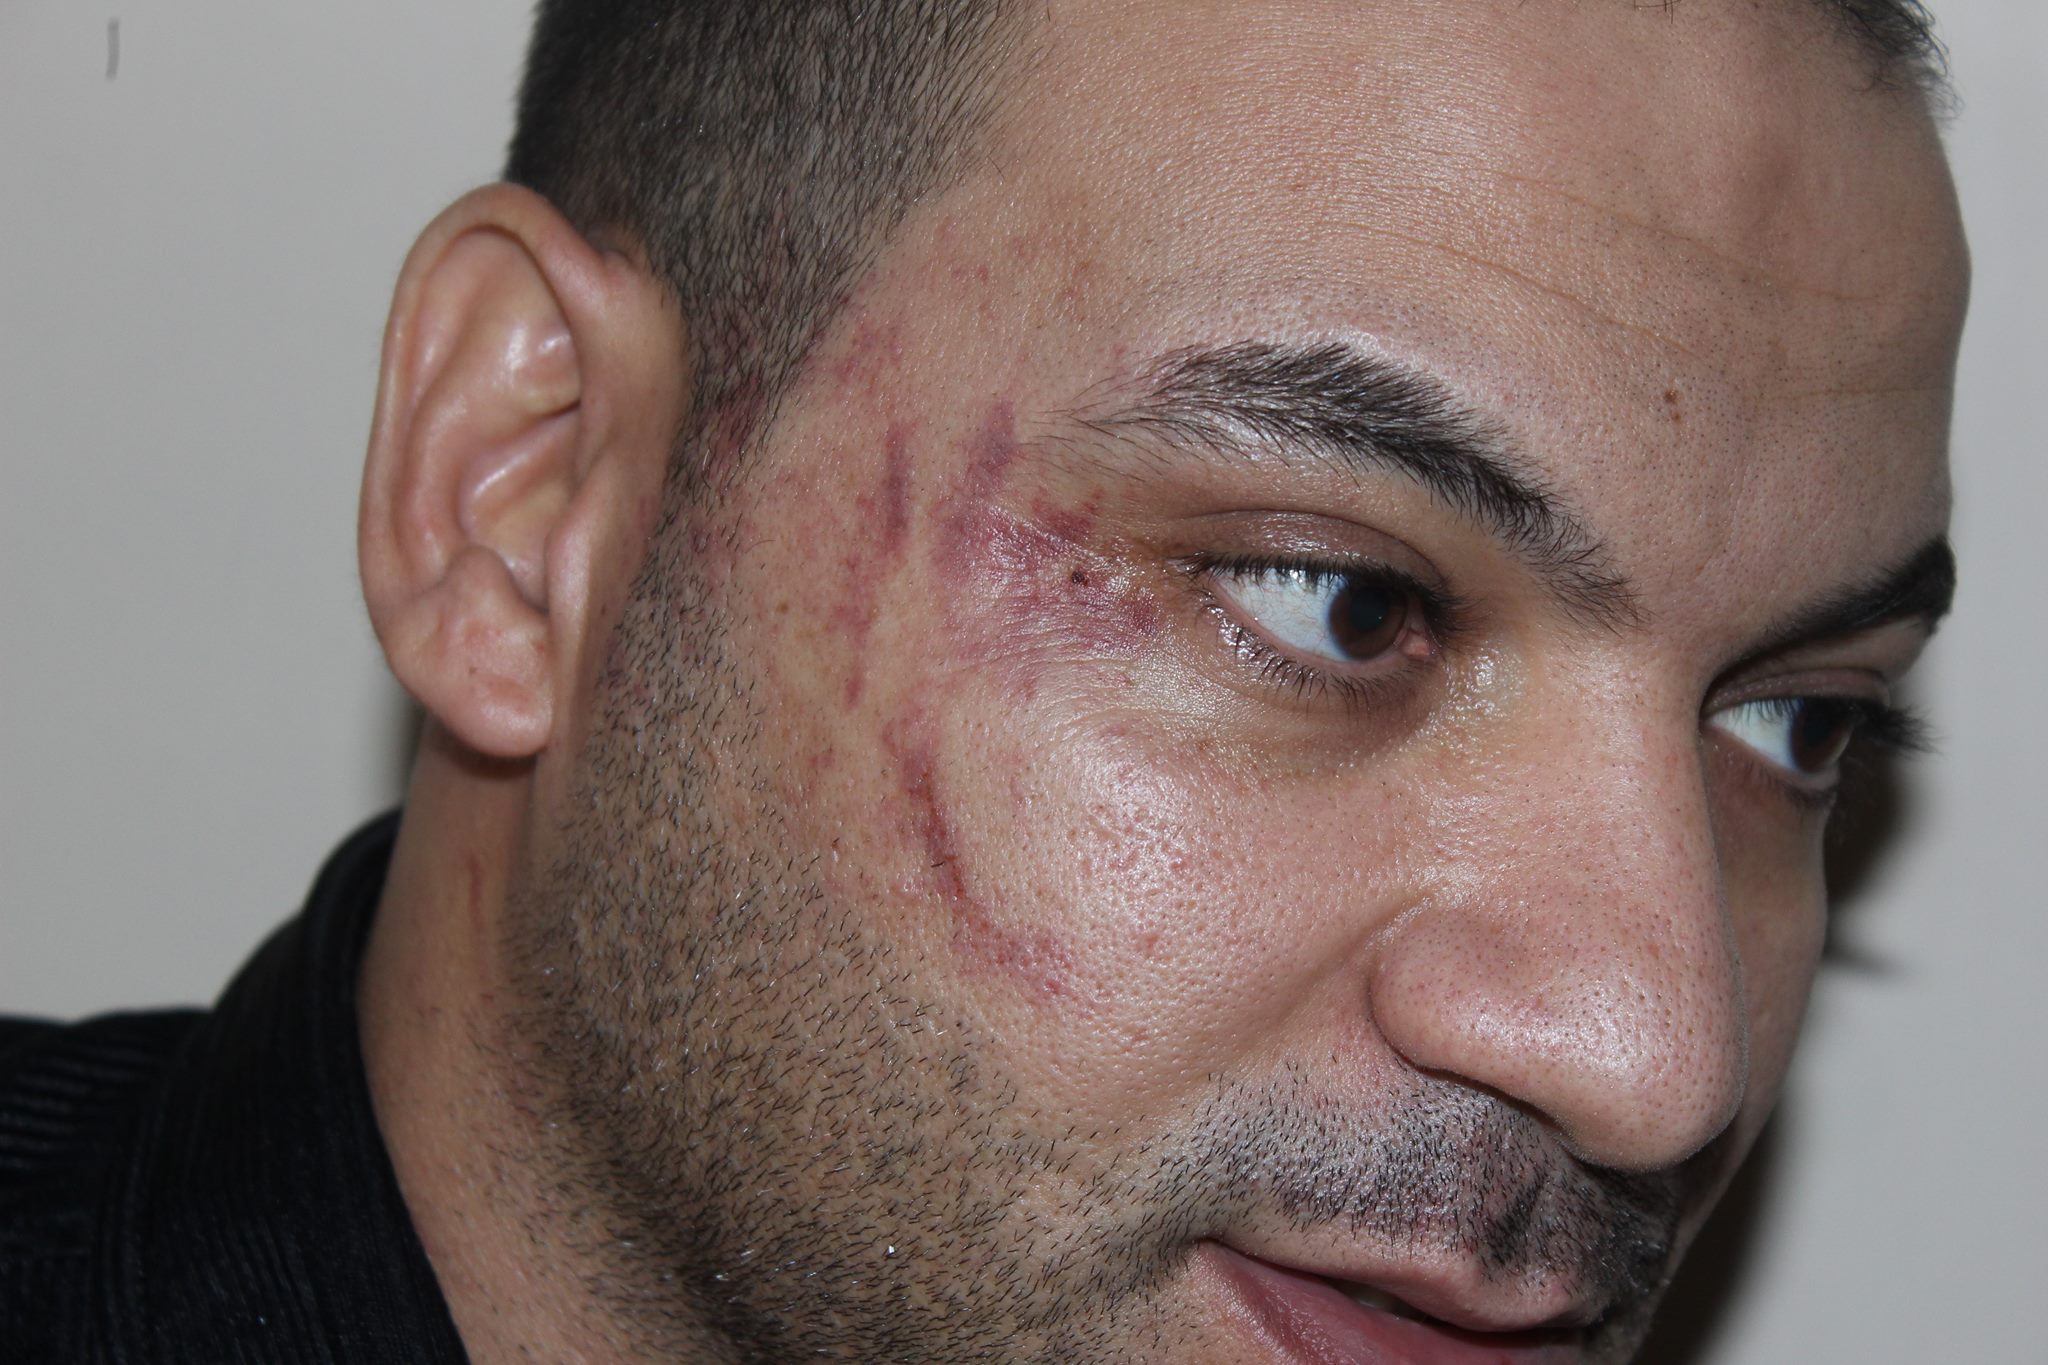 حقوق الإنسان الأردني: الاعتداء على العامل المصري لا يجيزه القانون